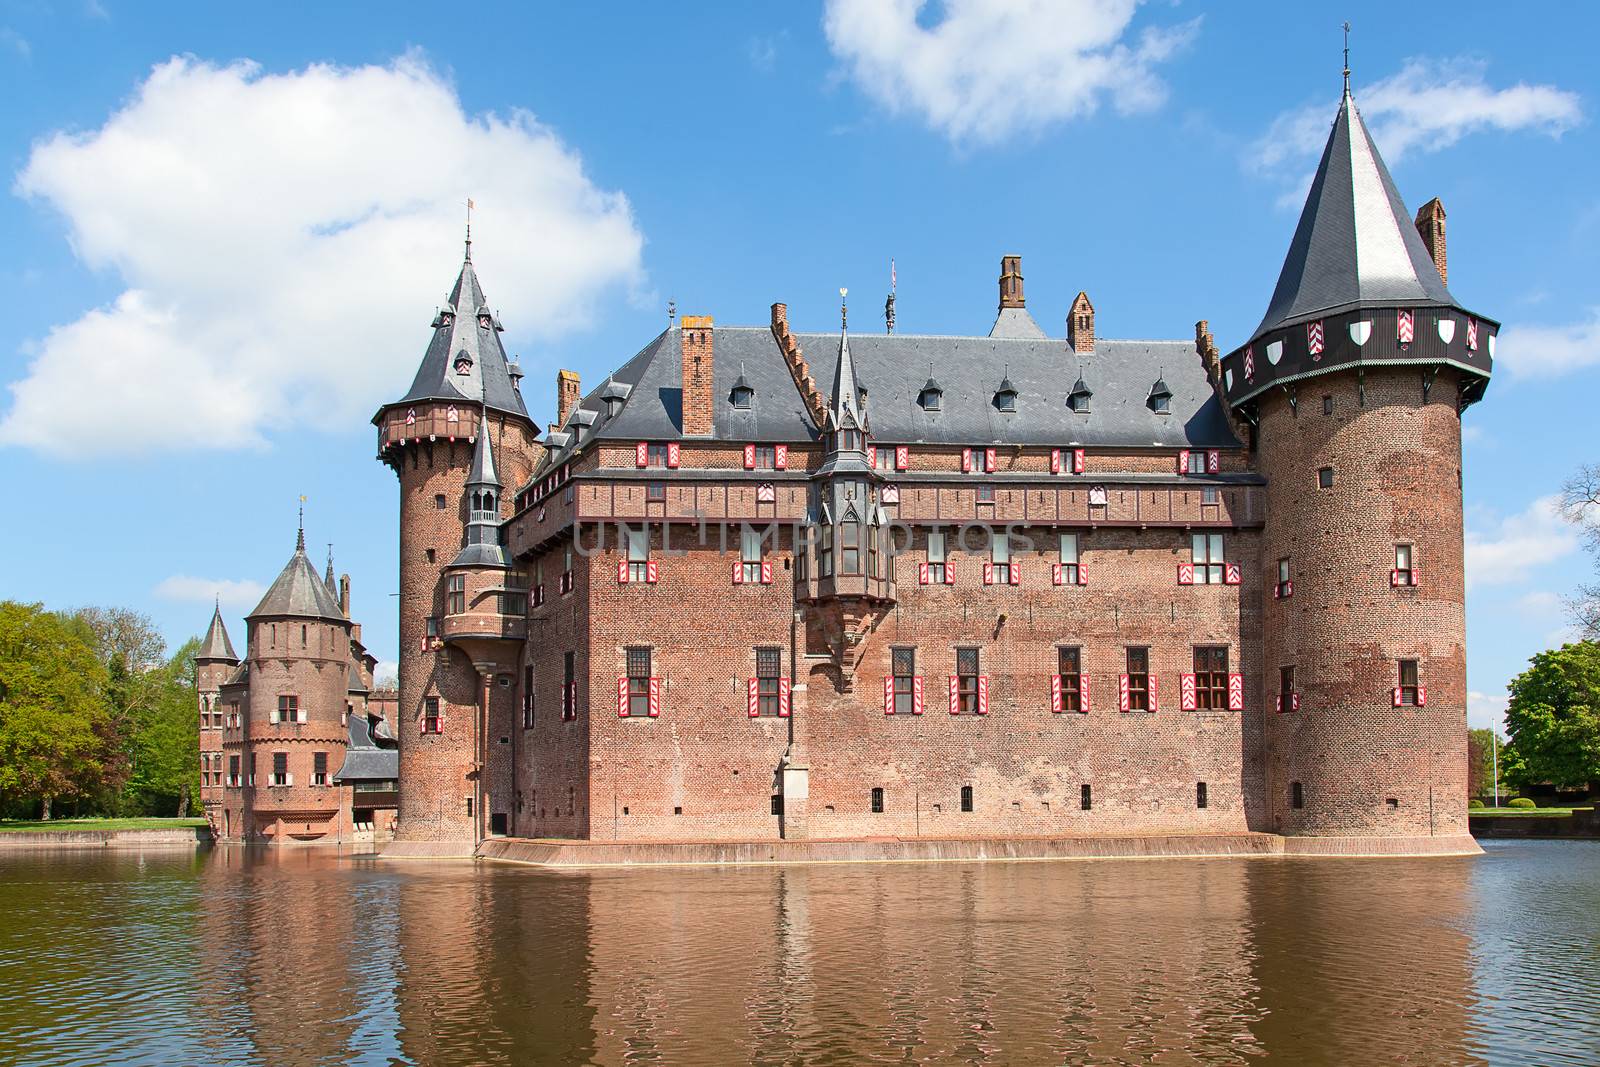 De Haar castle by swisshippo